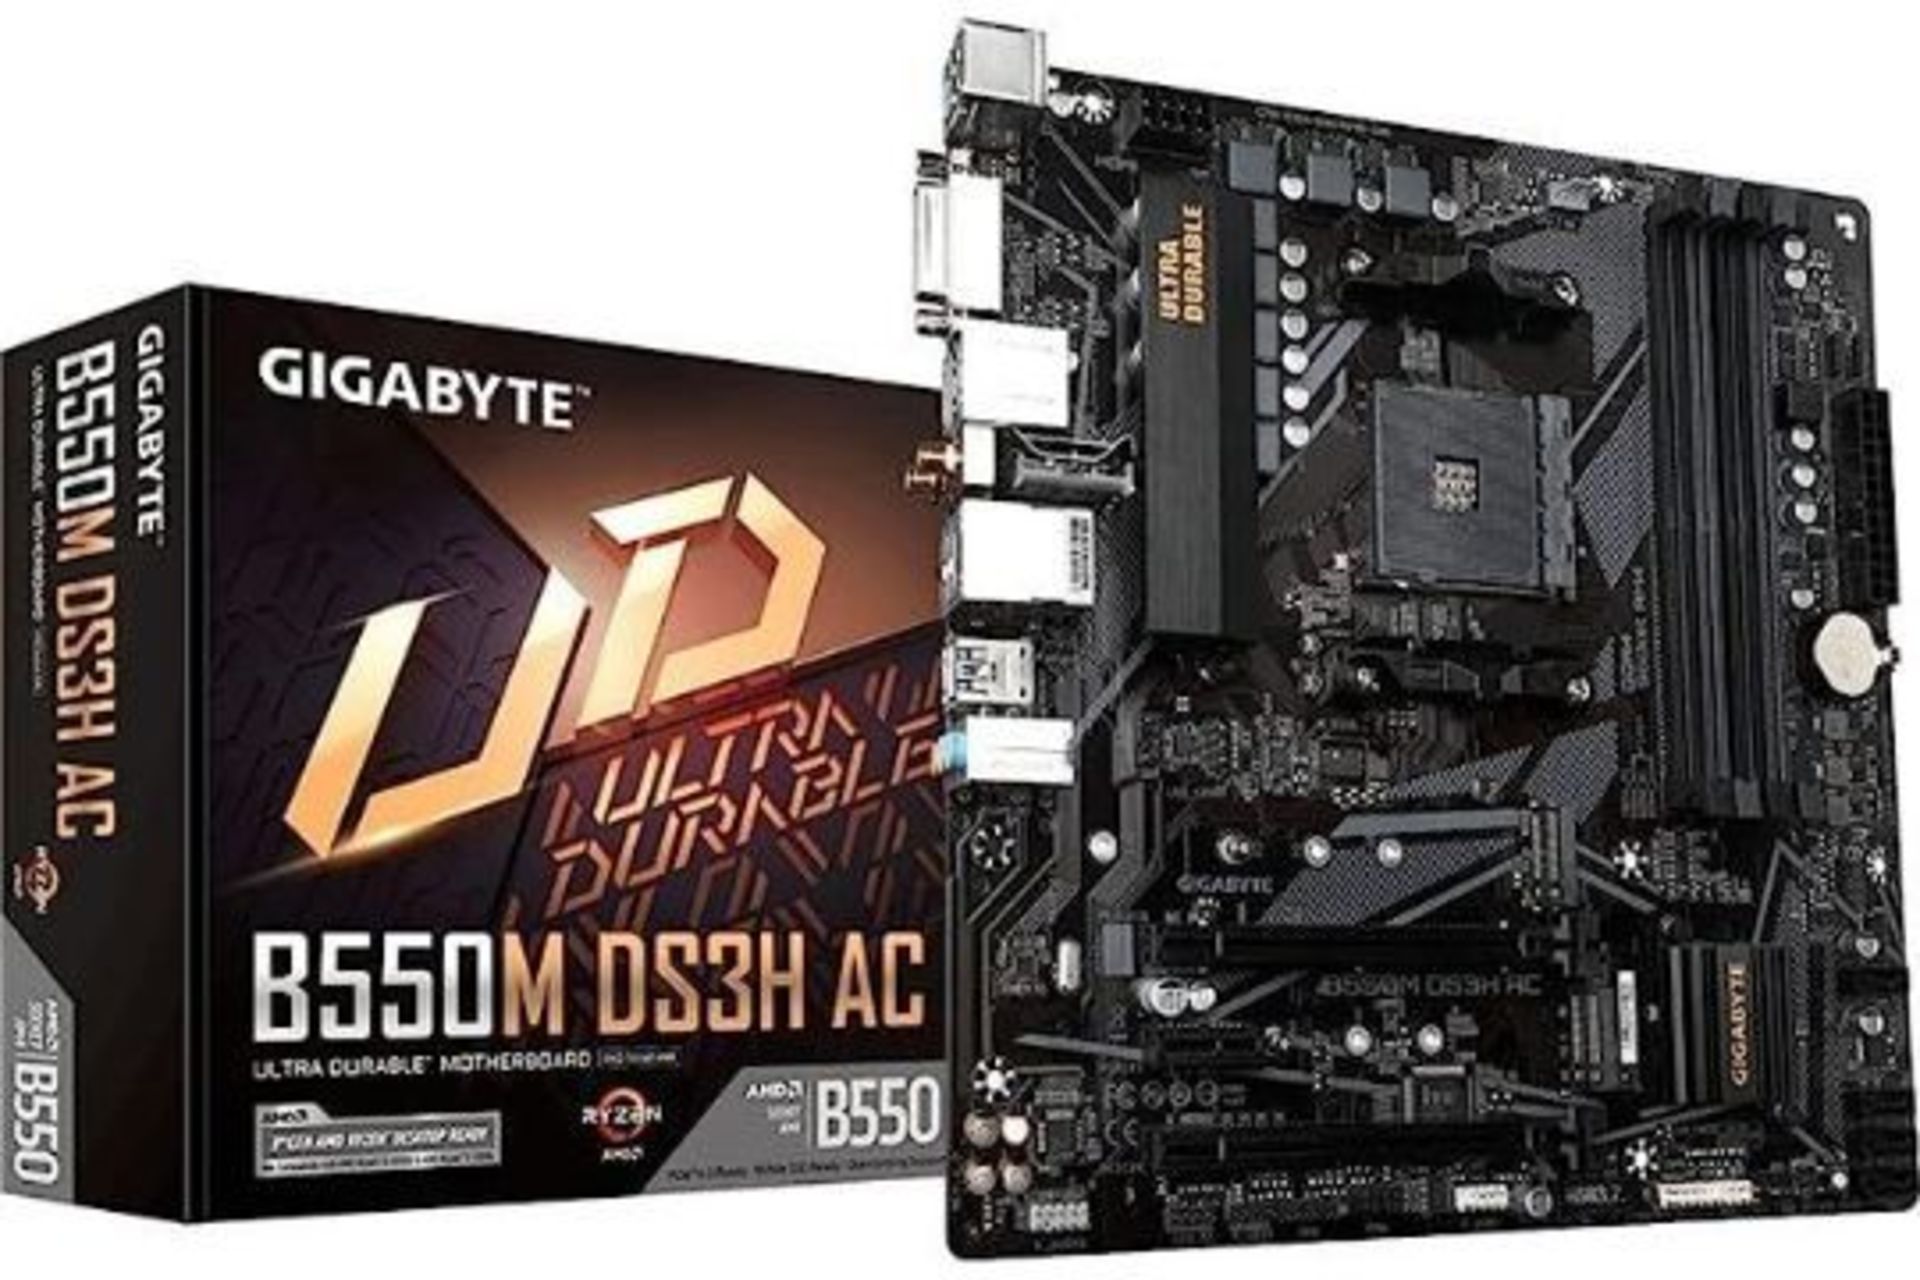 GIGABYTE B550M DS3H AC (AM4 AMD/B550/Micro ATX/Dual M.2/SATA 6Gb/s/USB 3.2 Gen 1/PCIe 4.0/HMDI/DVI/